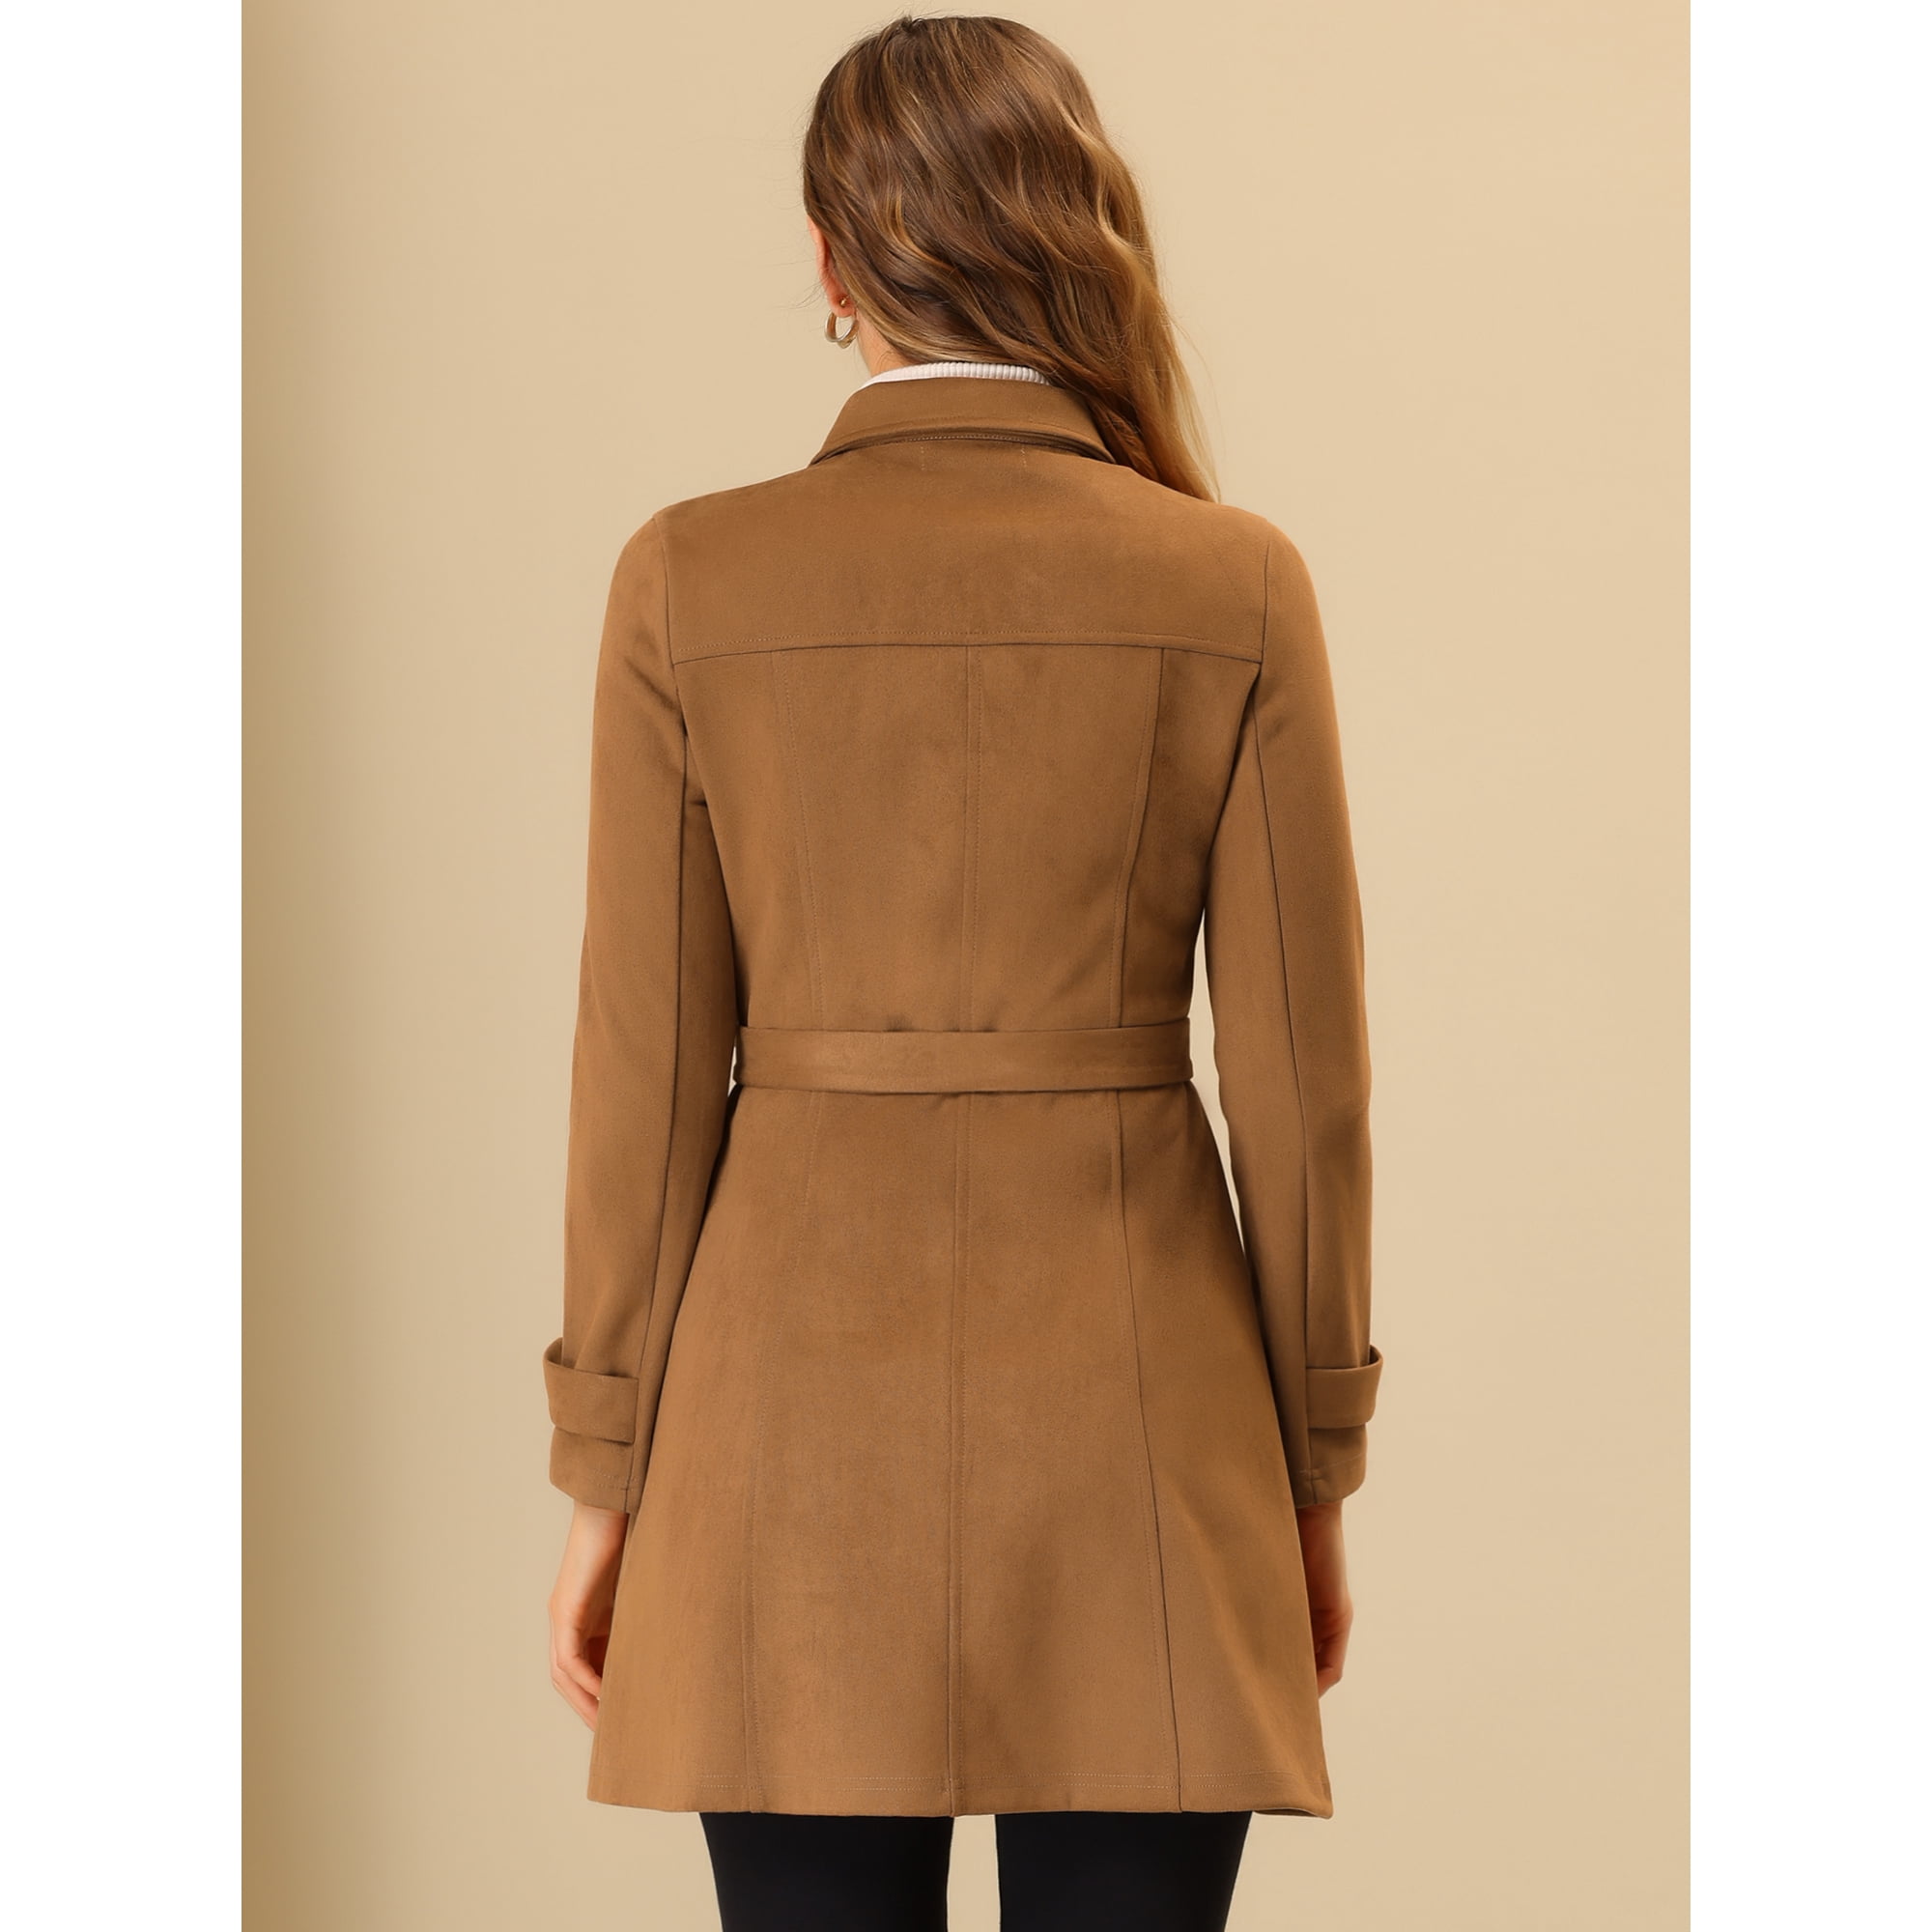 manteau cintré marron femme